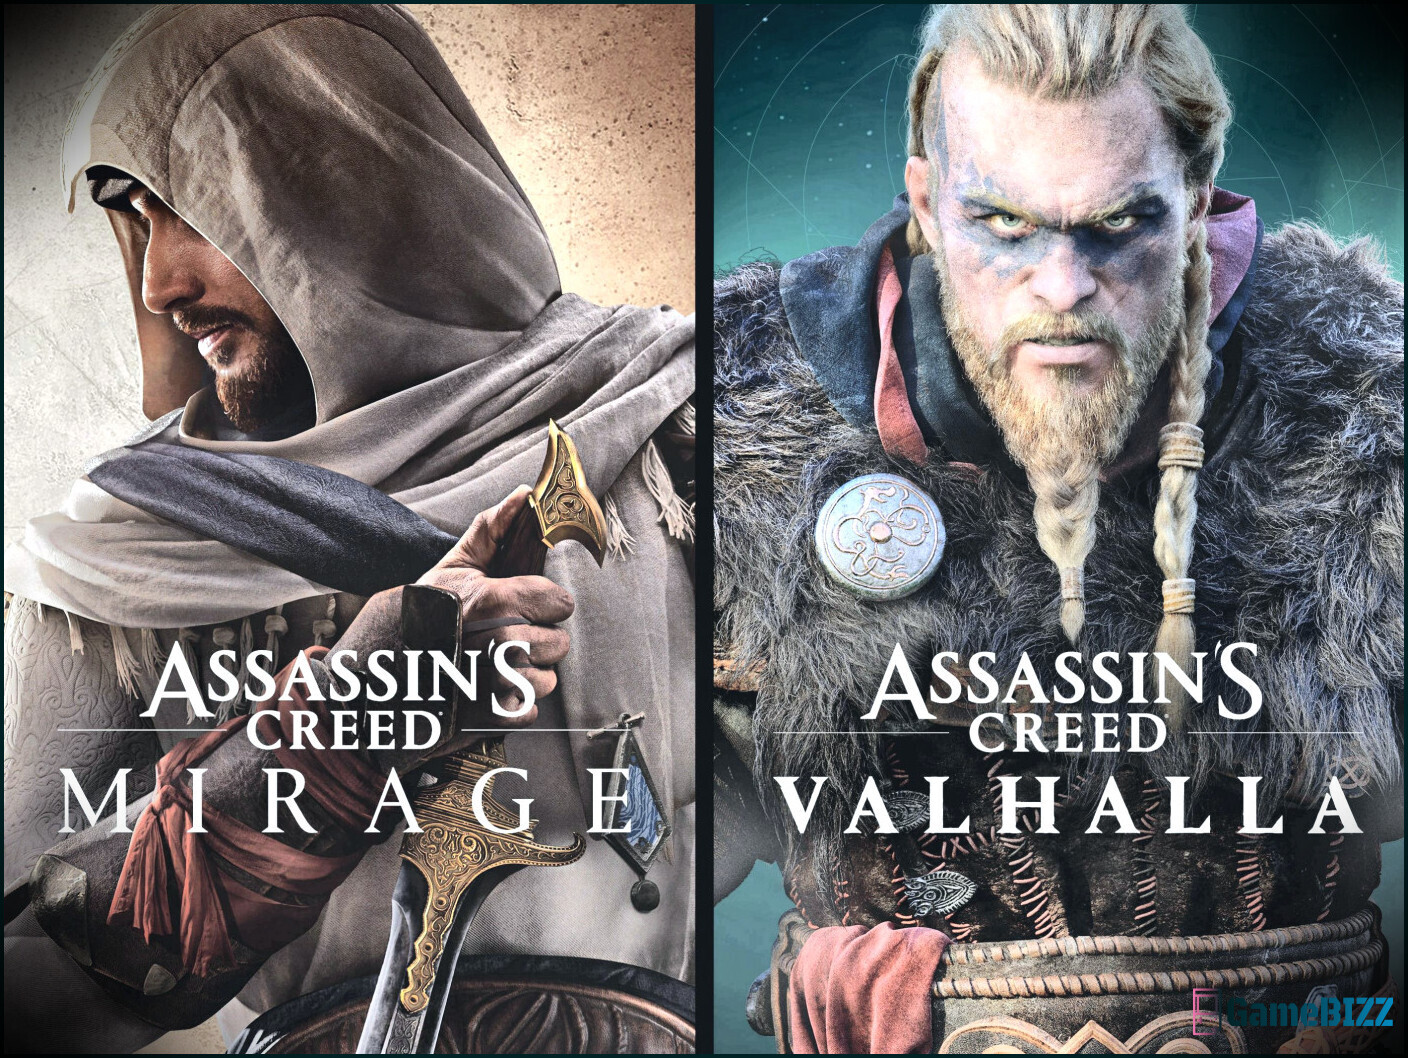 Assassin's Creed Valhalla kostet derzeit mit Mirage weniger als alleine